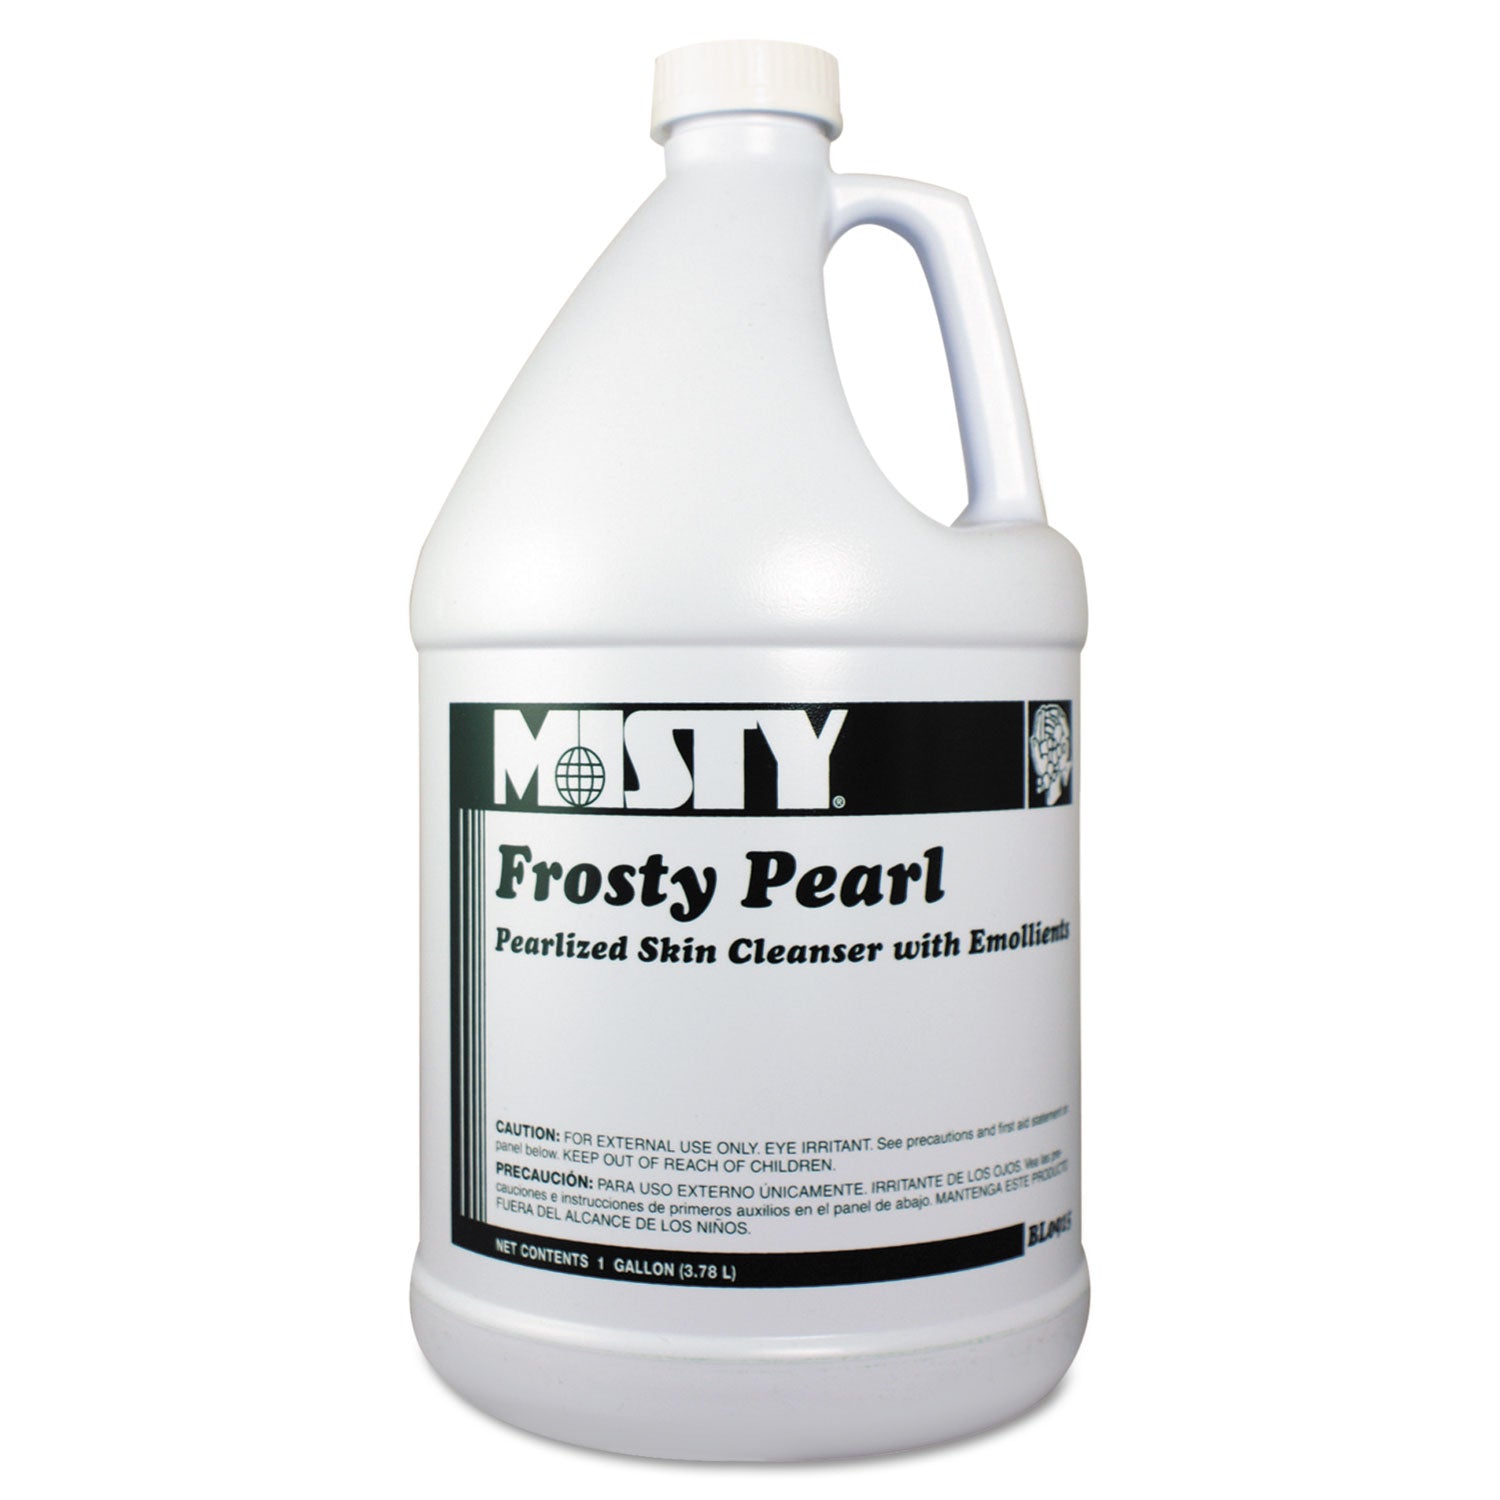 frosty-pearl-soap-moisturizer-frosty-pearl-bouquet-scent-1-gal-bottle-4-carton_amr1038793 - 1